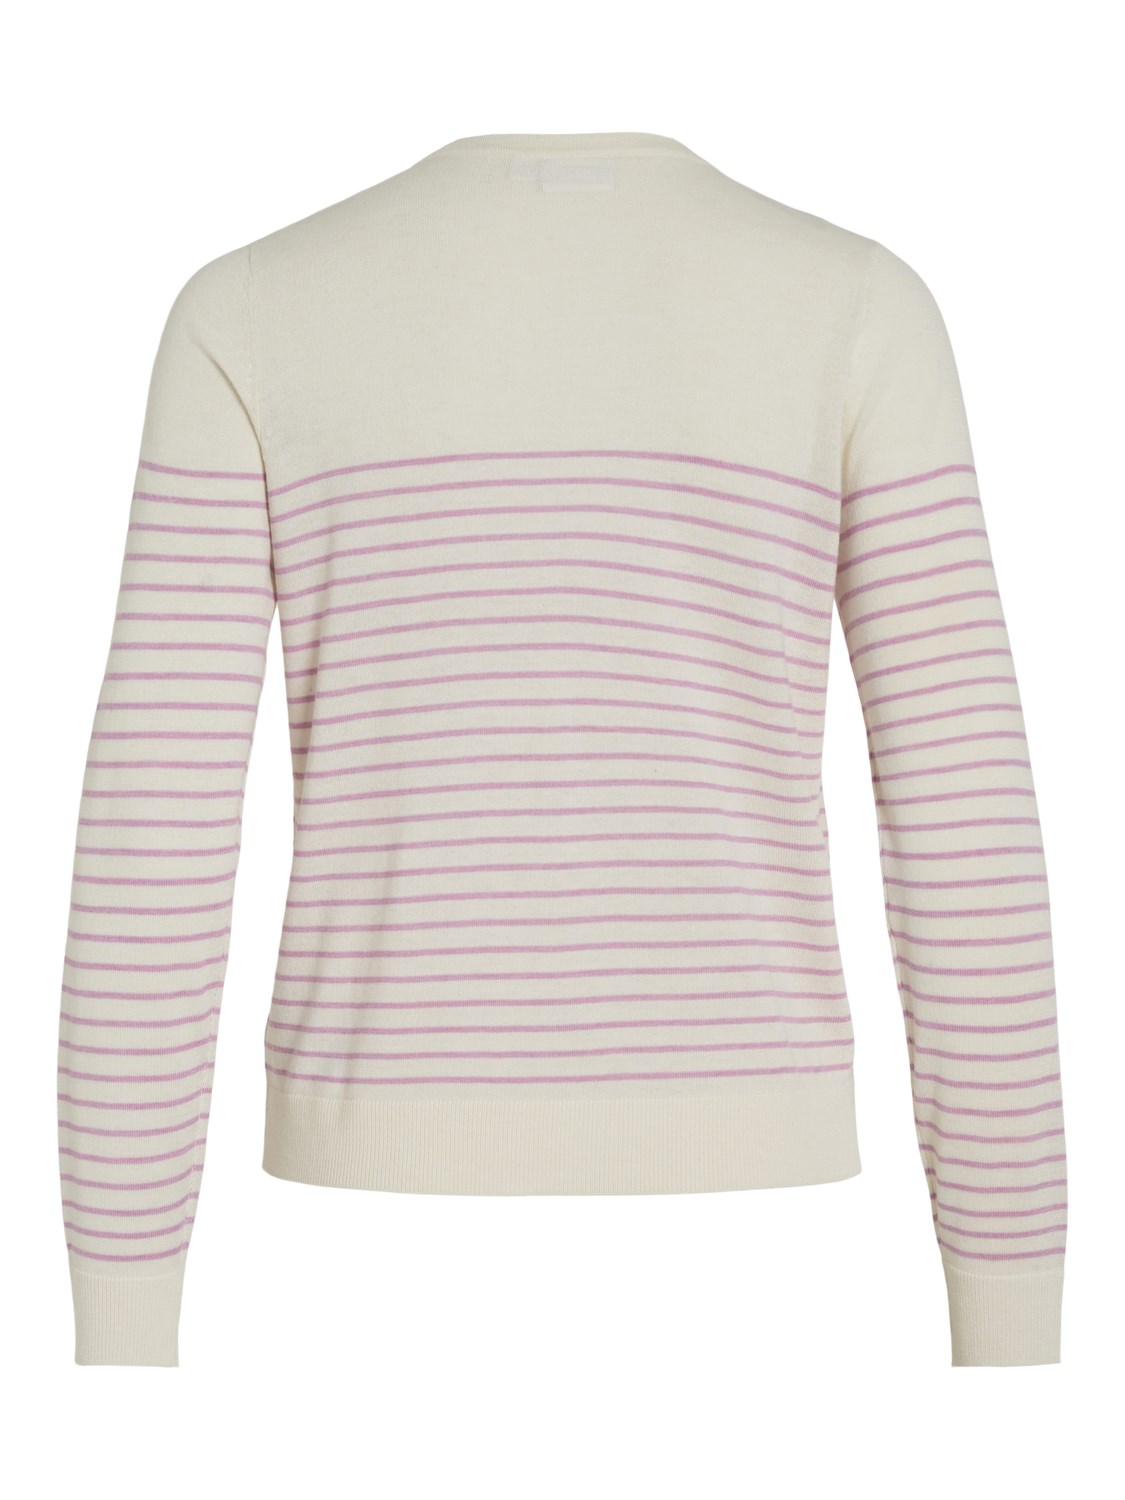 Jersey de punto fino modelo Abella con rayas rosas sobre fondo blanco. Modelo 14089537 de Vila.